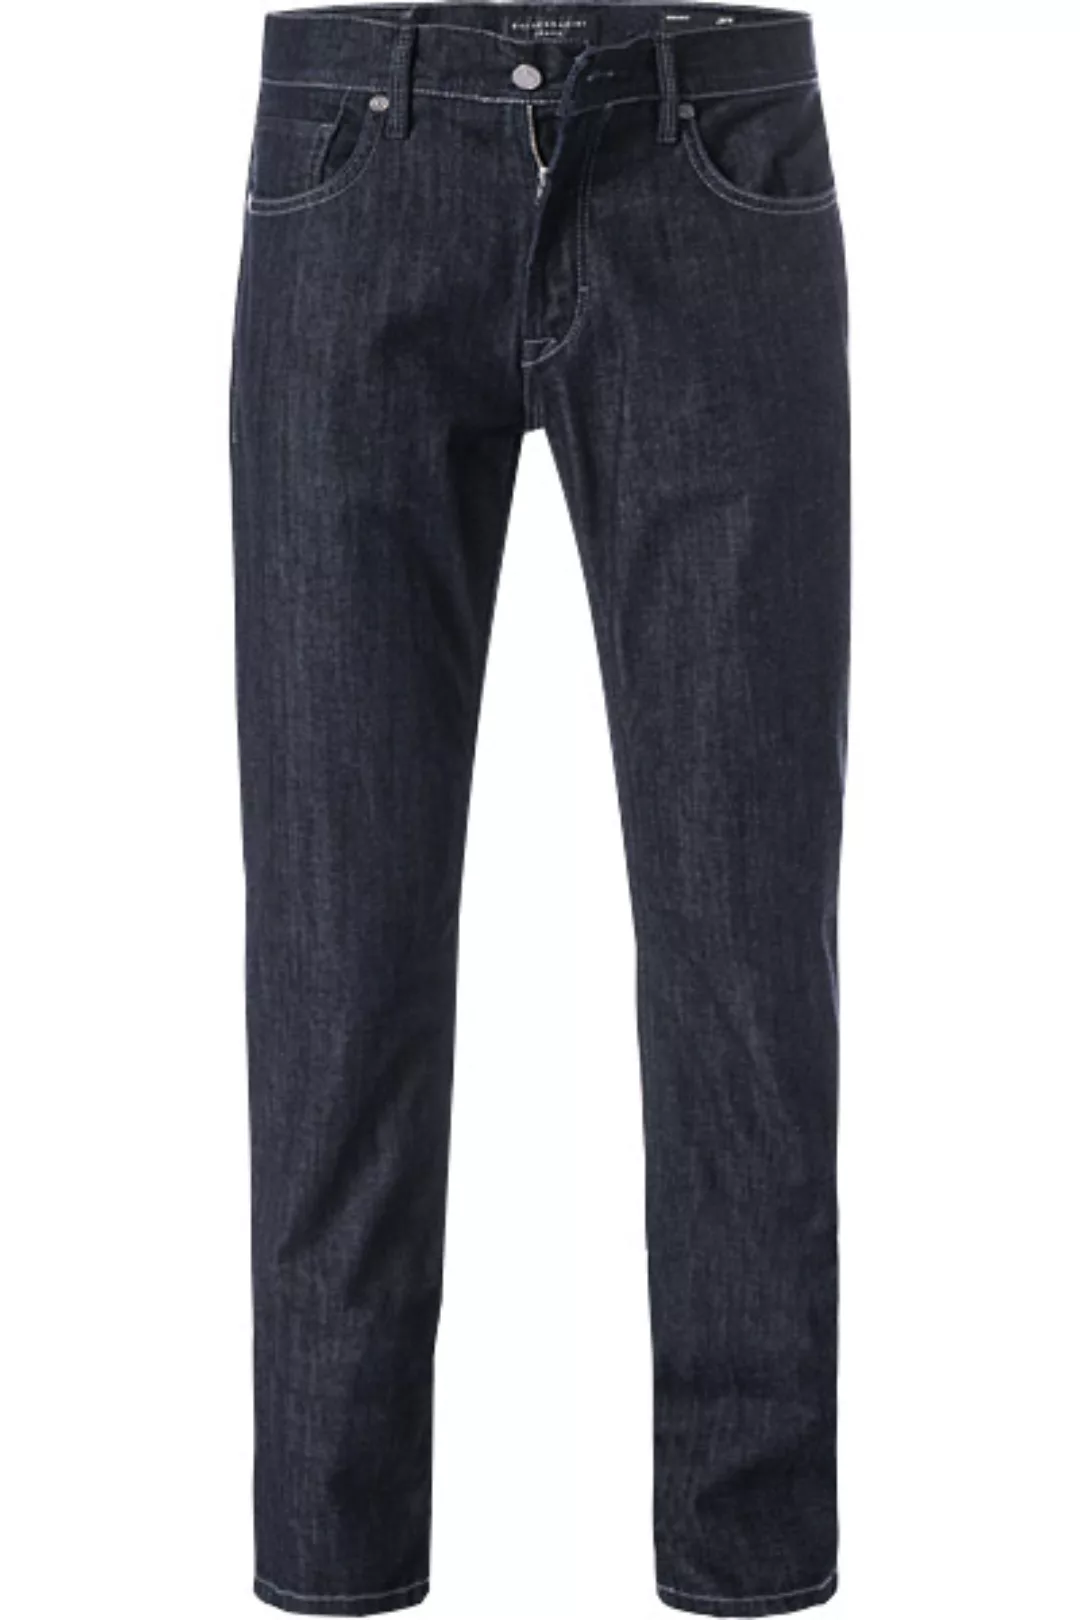 BALDESSARINI Jeans dunkelblau 16502/000/01212/60 günstig online kaufen